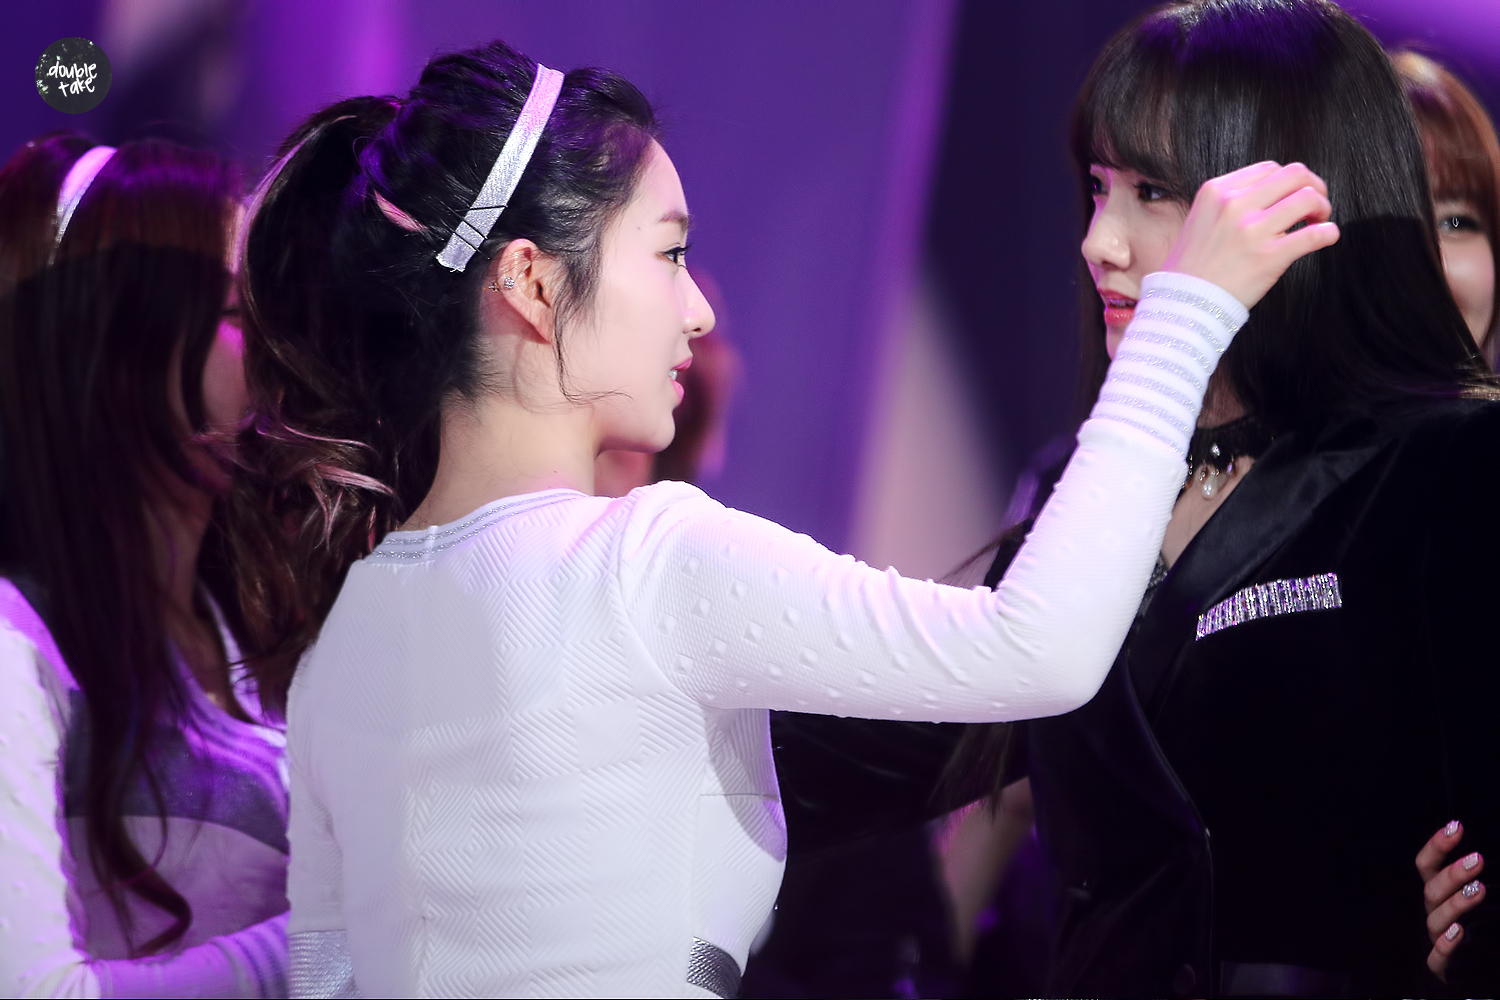 [PIC][31-12-2014]Hình ảnh mới nhất của SNSD từ Đại nhạc hội cuối năm - "2014 MBC Gayo Daejun"  246D7E4254A7CDA03062F8